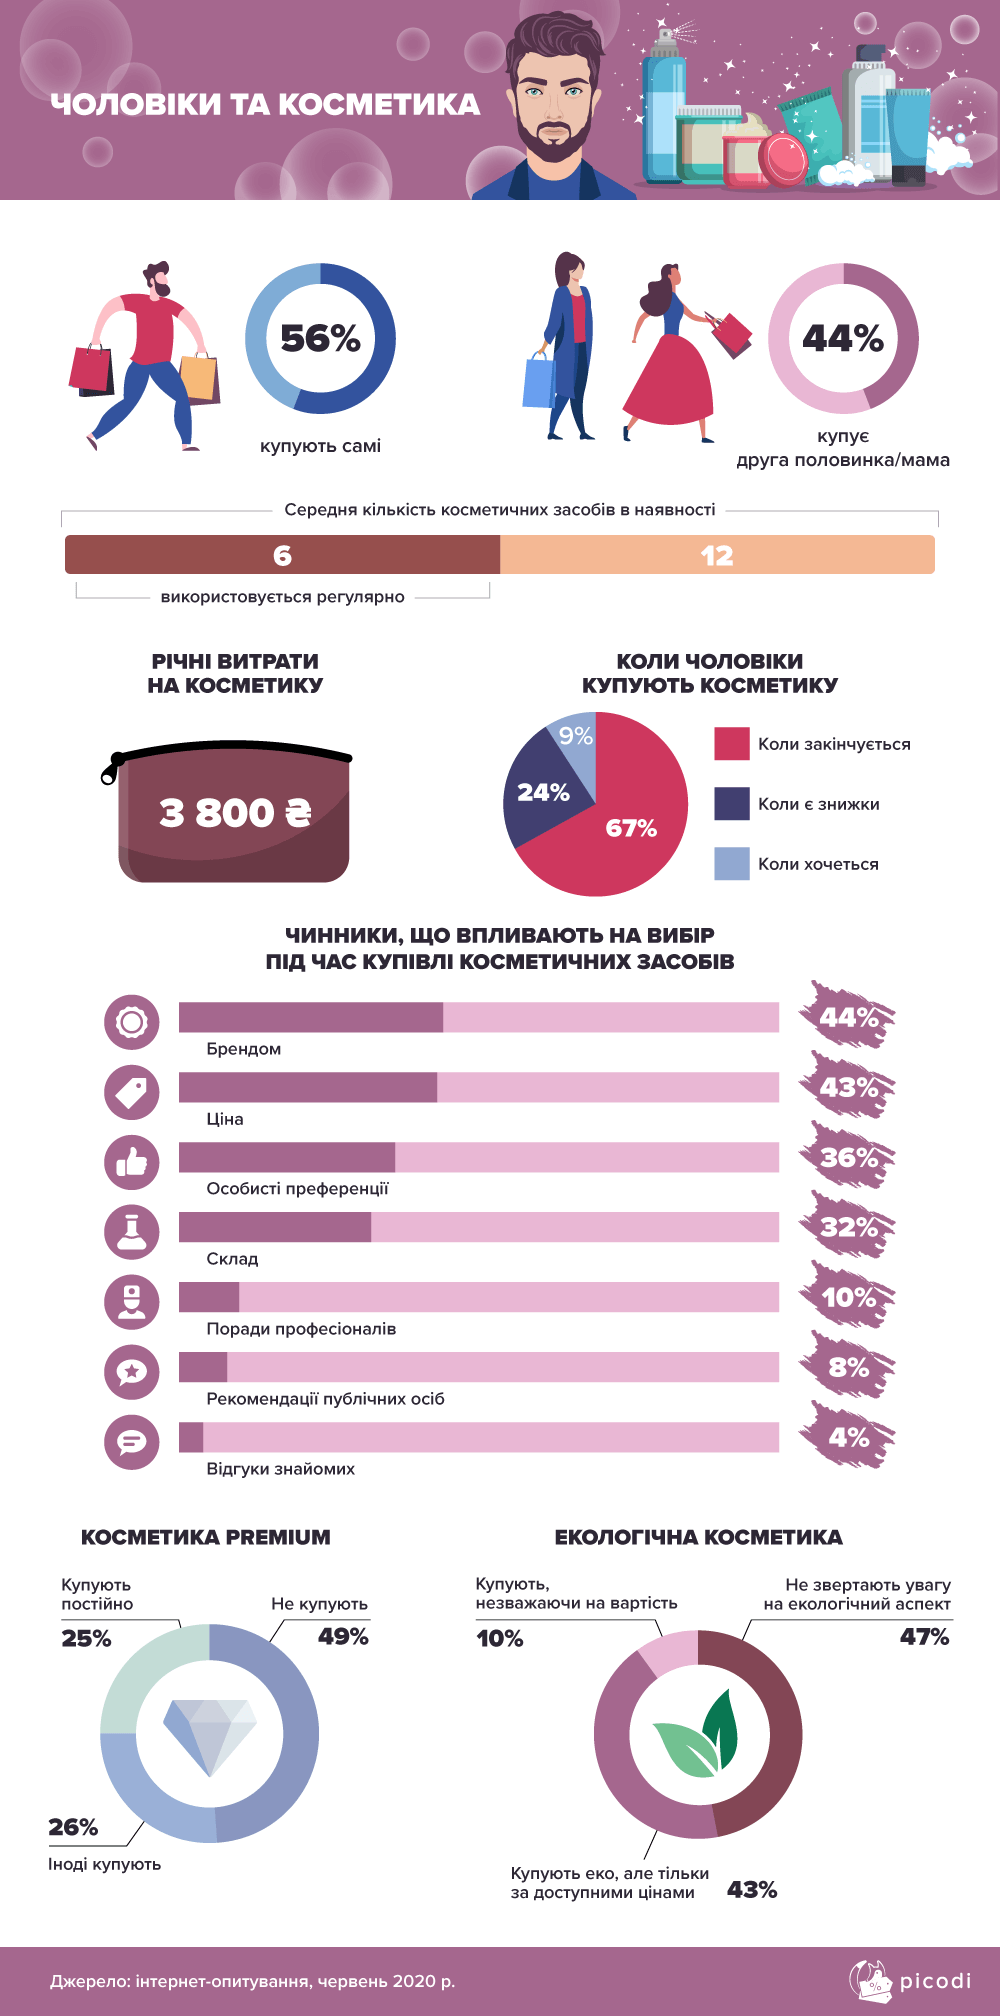 Как покупают косметику мужчины. Инфографика: Picodi.com